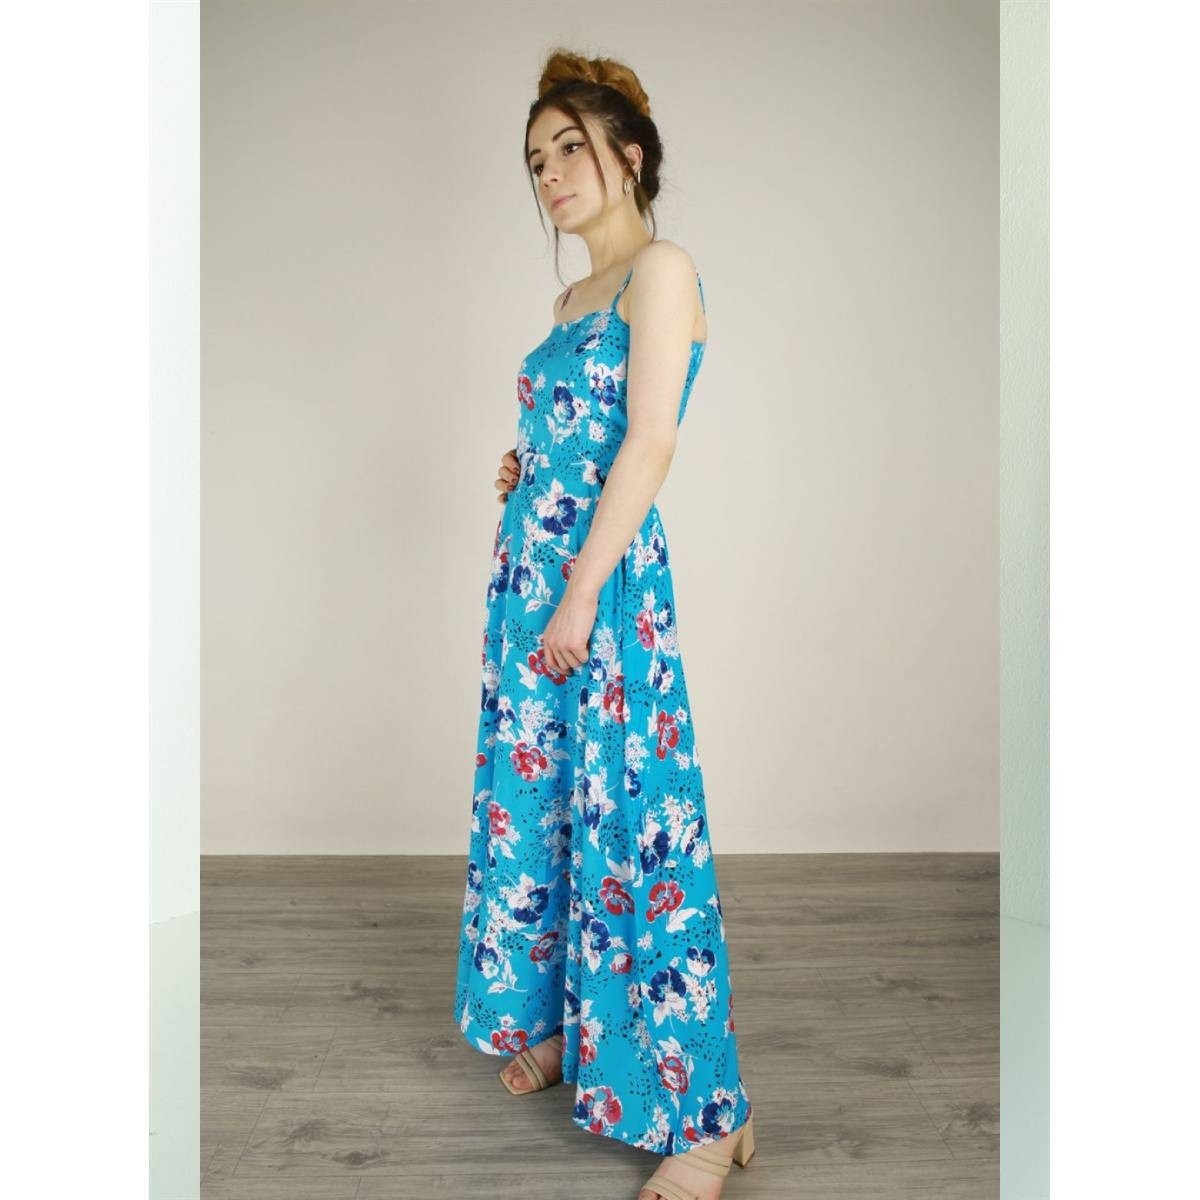 Flo Kadın  Mavi  İp Askılı Cepli Çiçek Desenli Pamuklu Elbise. 2